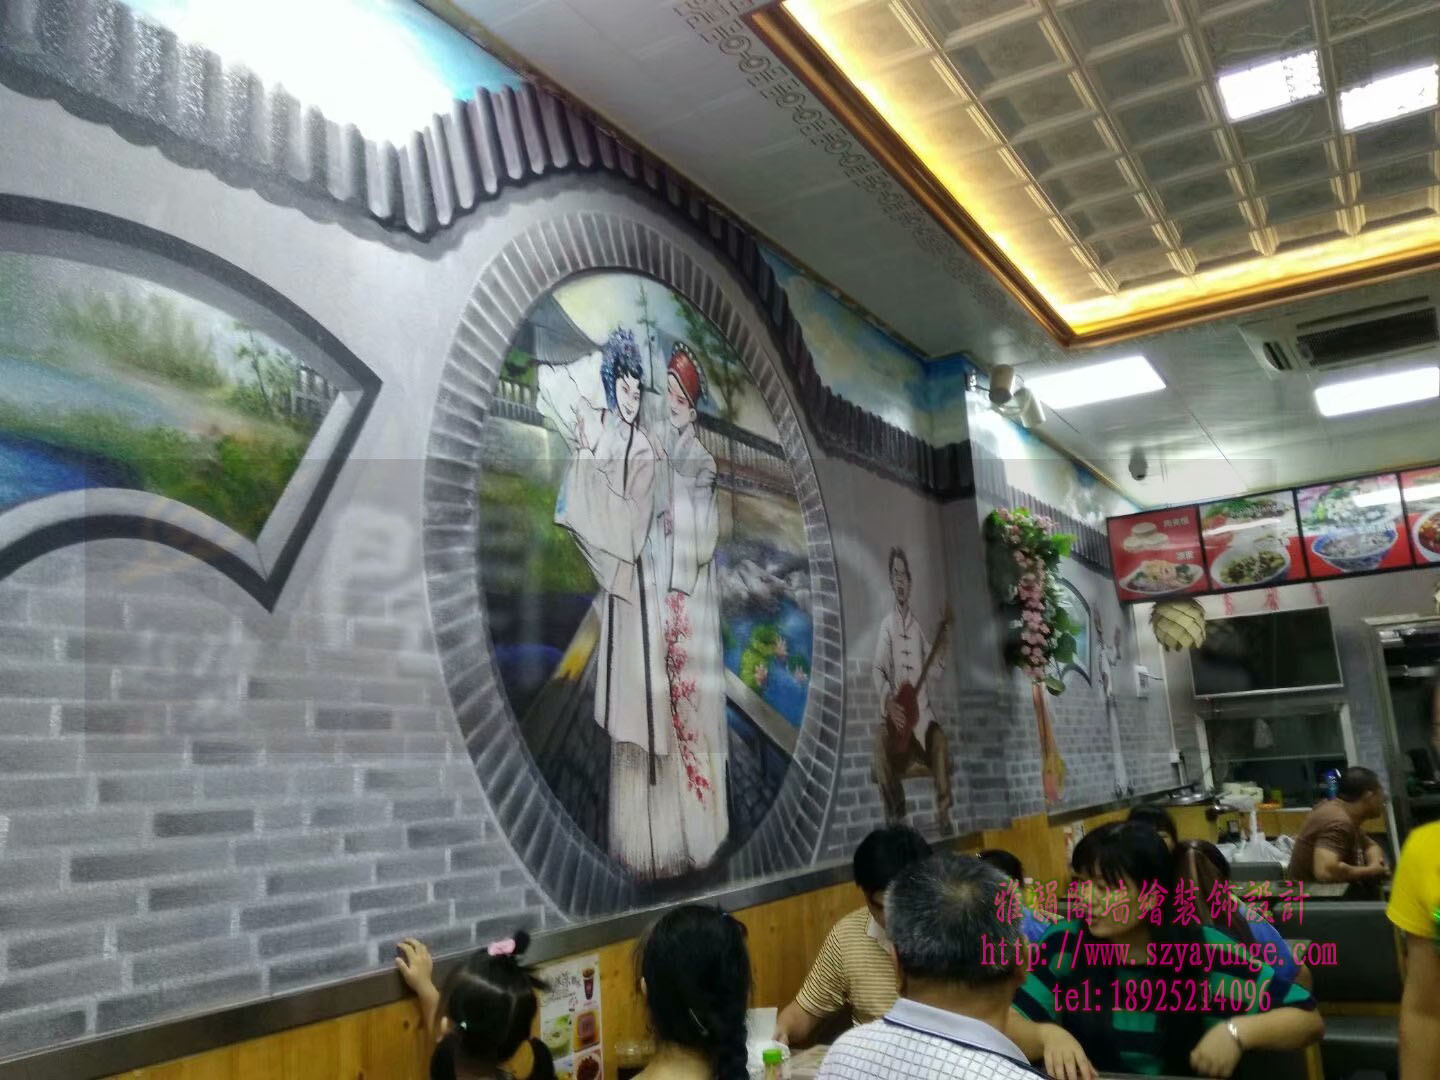 福州工程装饰手绘壁画墙绘3d彩绘，酒店餐厅办公室学校商场墙体彩绘壁画